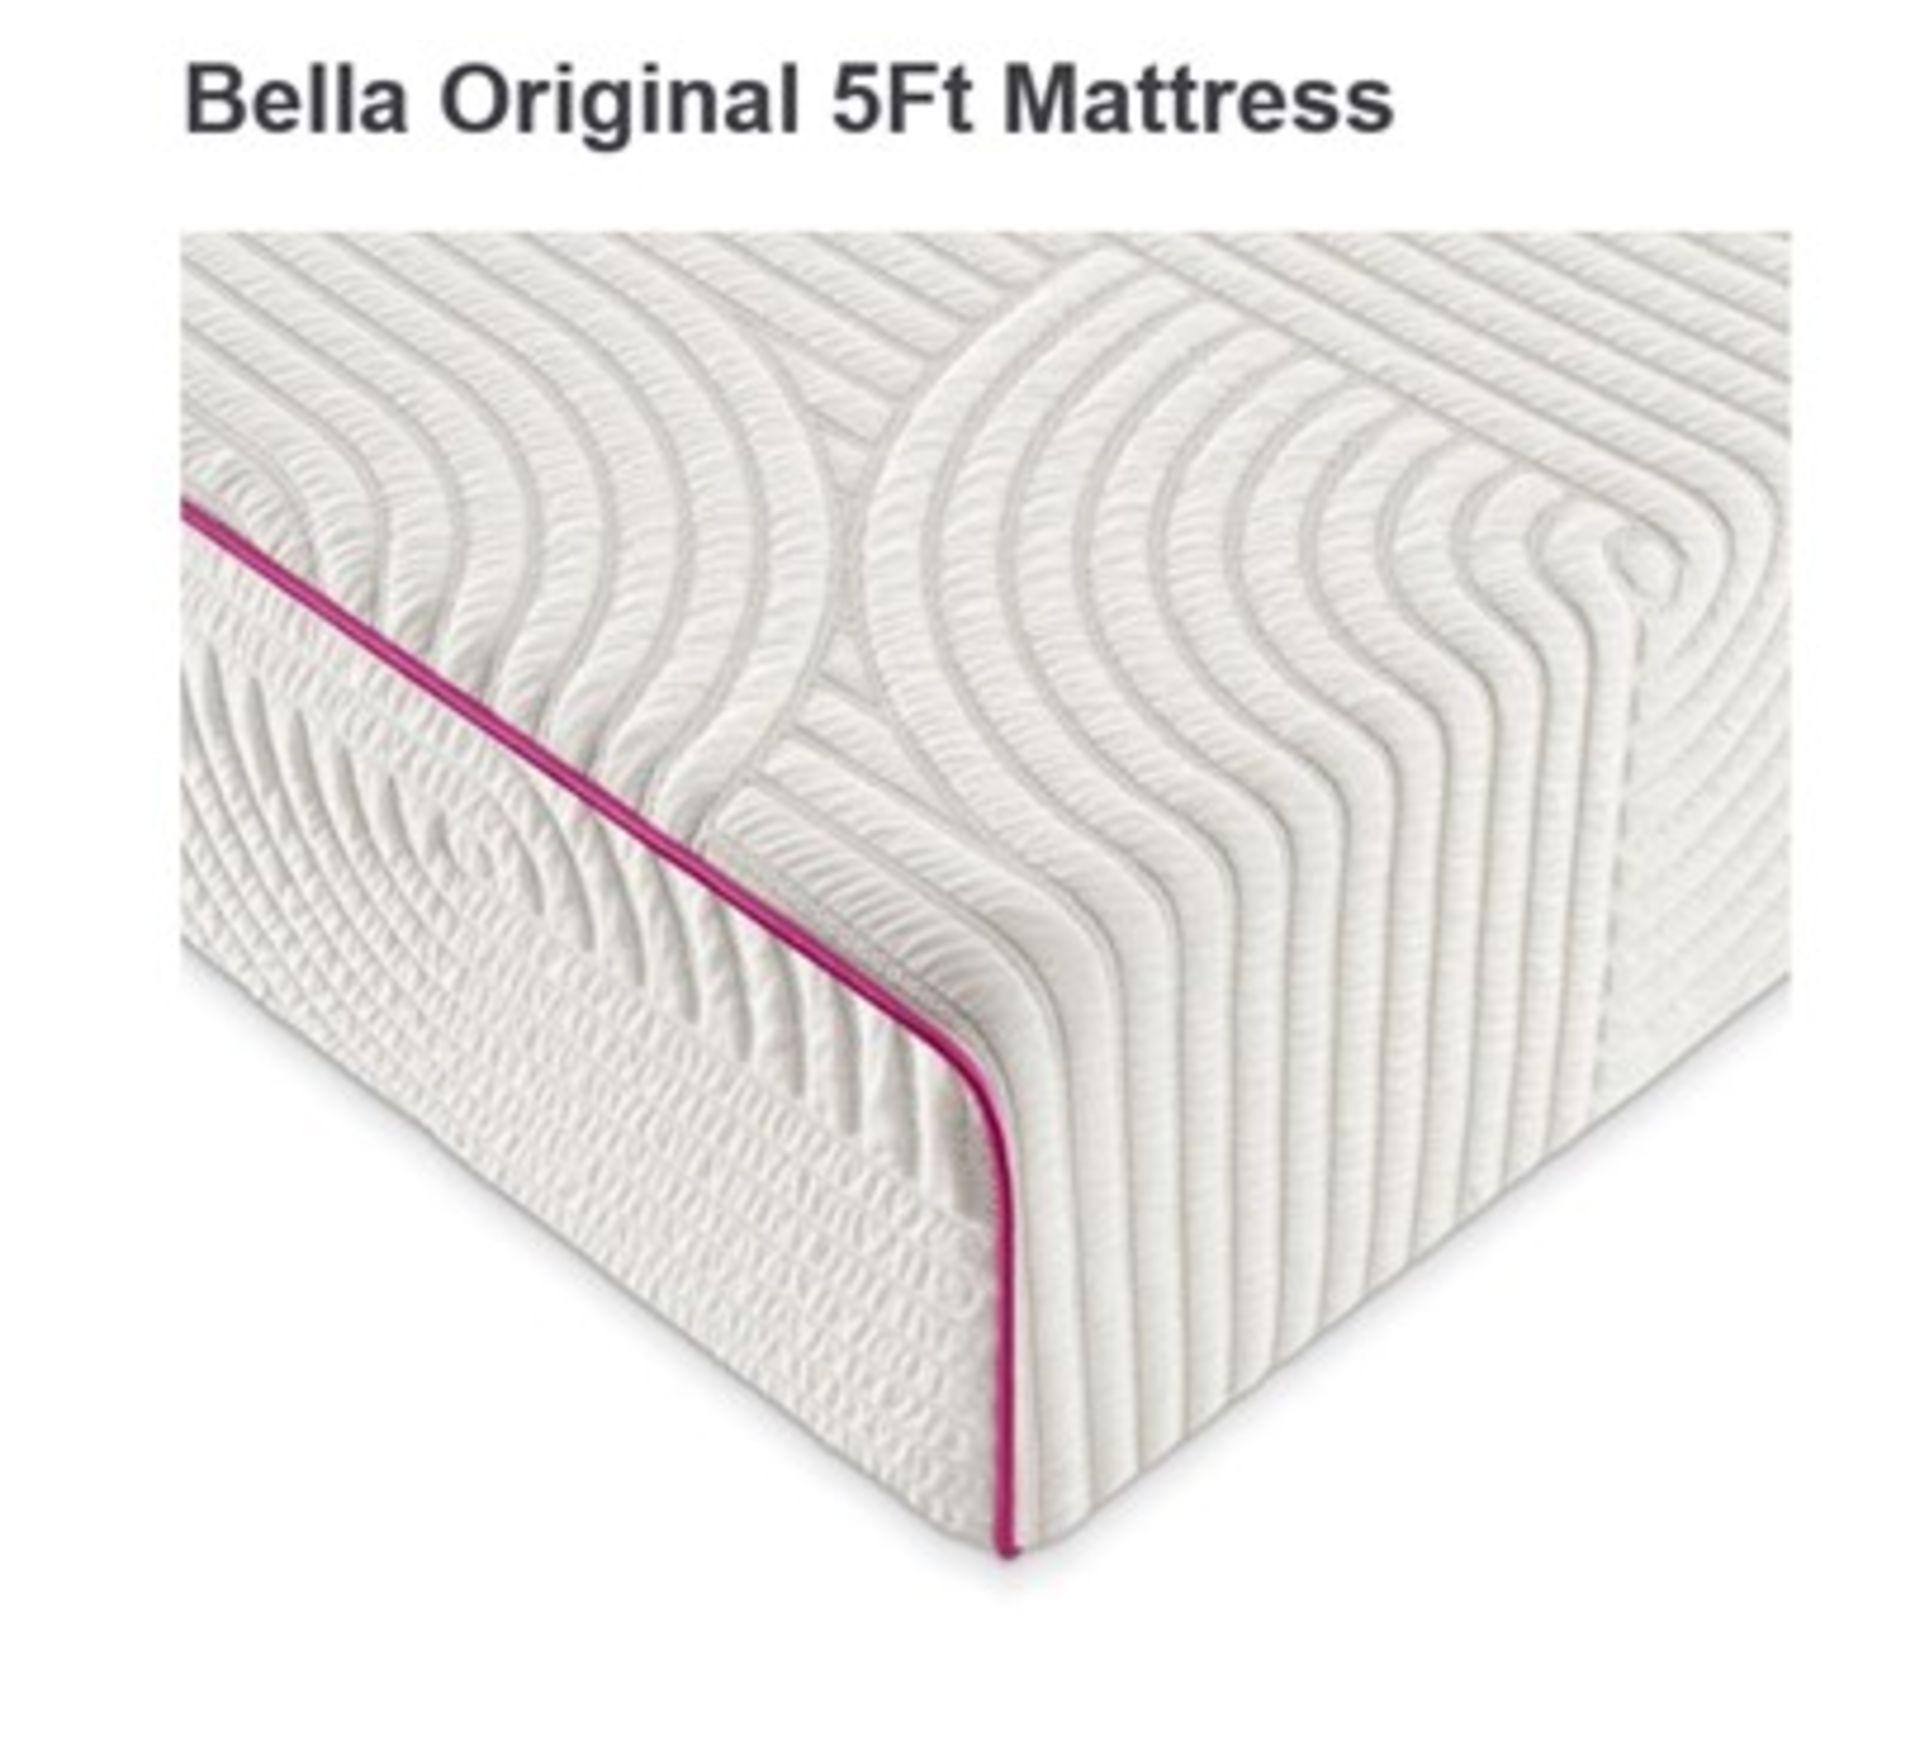 x1|Carpet Right Ex-Display 5ft Bella Original Mattress|RRP £499|